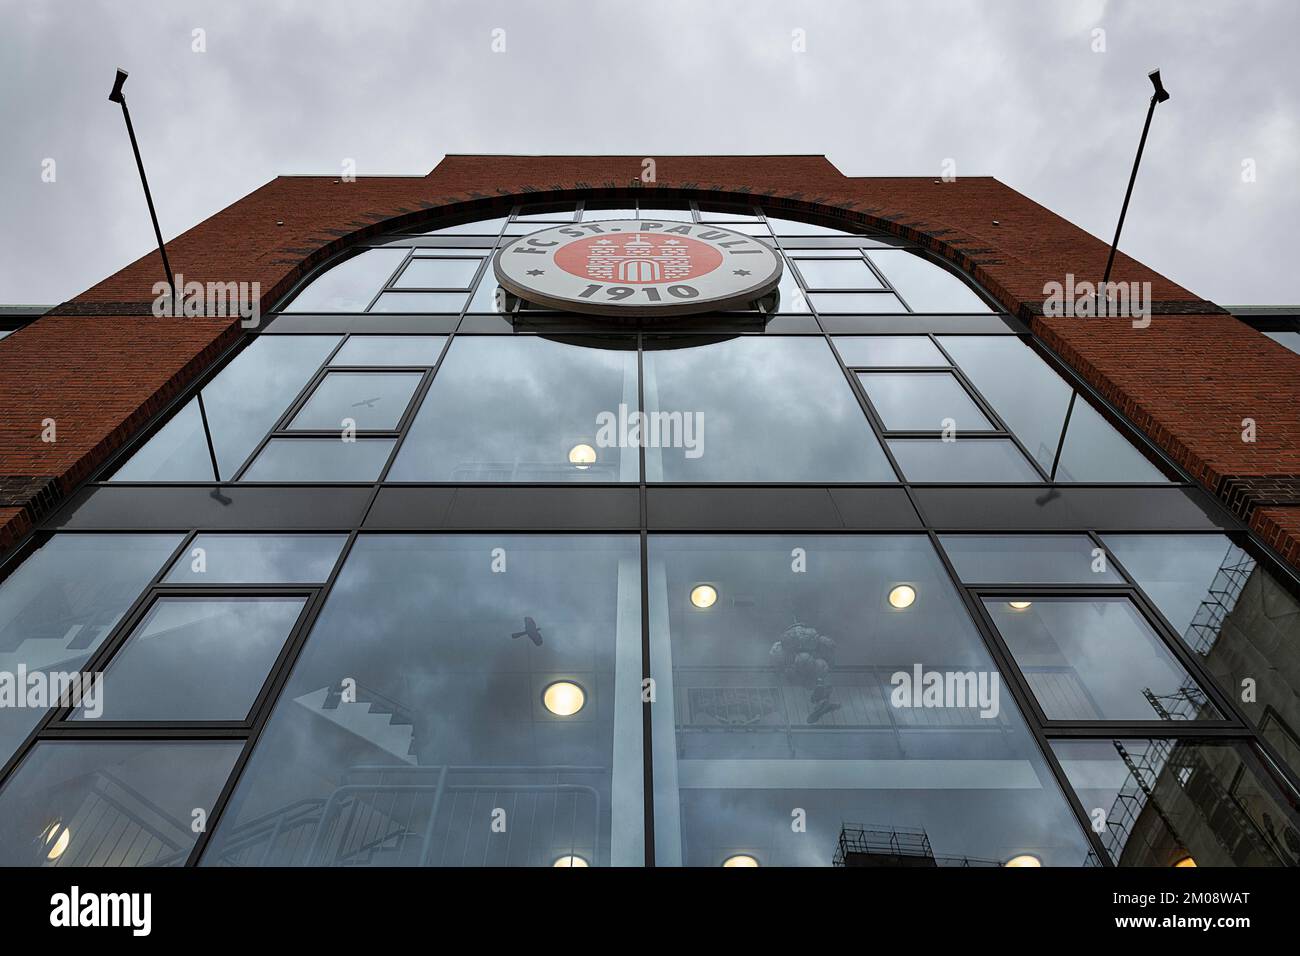 Glasfassade mit Logo FC St. Pauli, Millerntor Stadion, St. Pauli, Hamburg, Deutschland, Europa Stockfoto